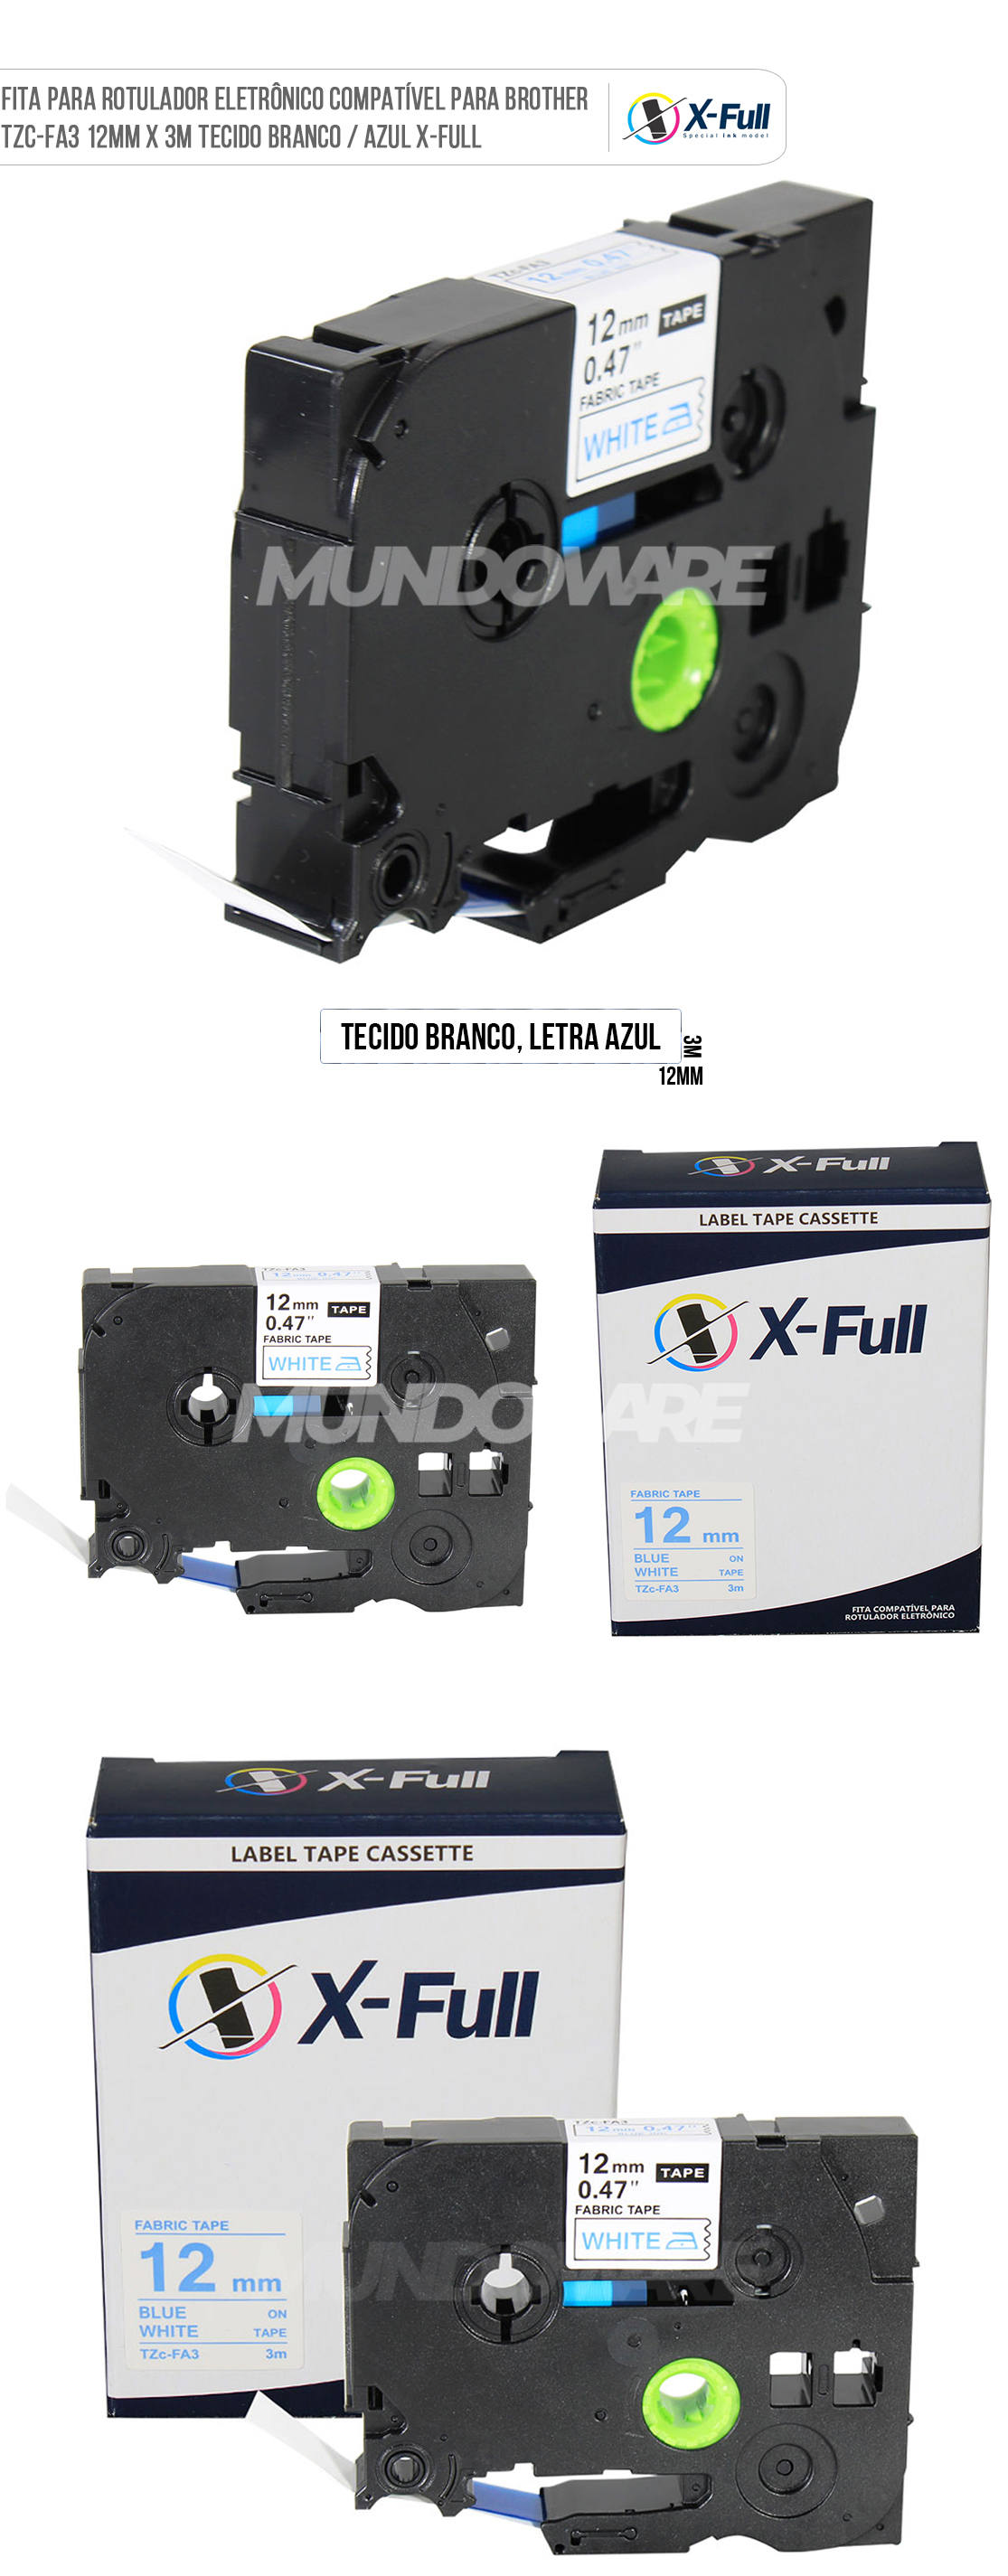 Fita Rotuladora Compatível para Rotulador Eletrônico Brother TZc-FA3 12mm x 3m Tecido Azul sobre Branco X-Full